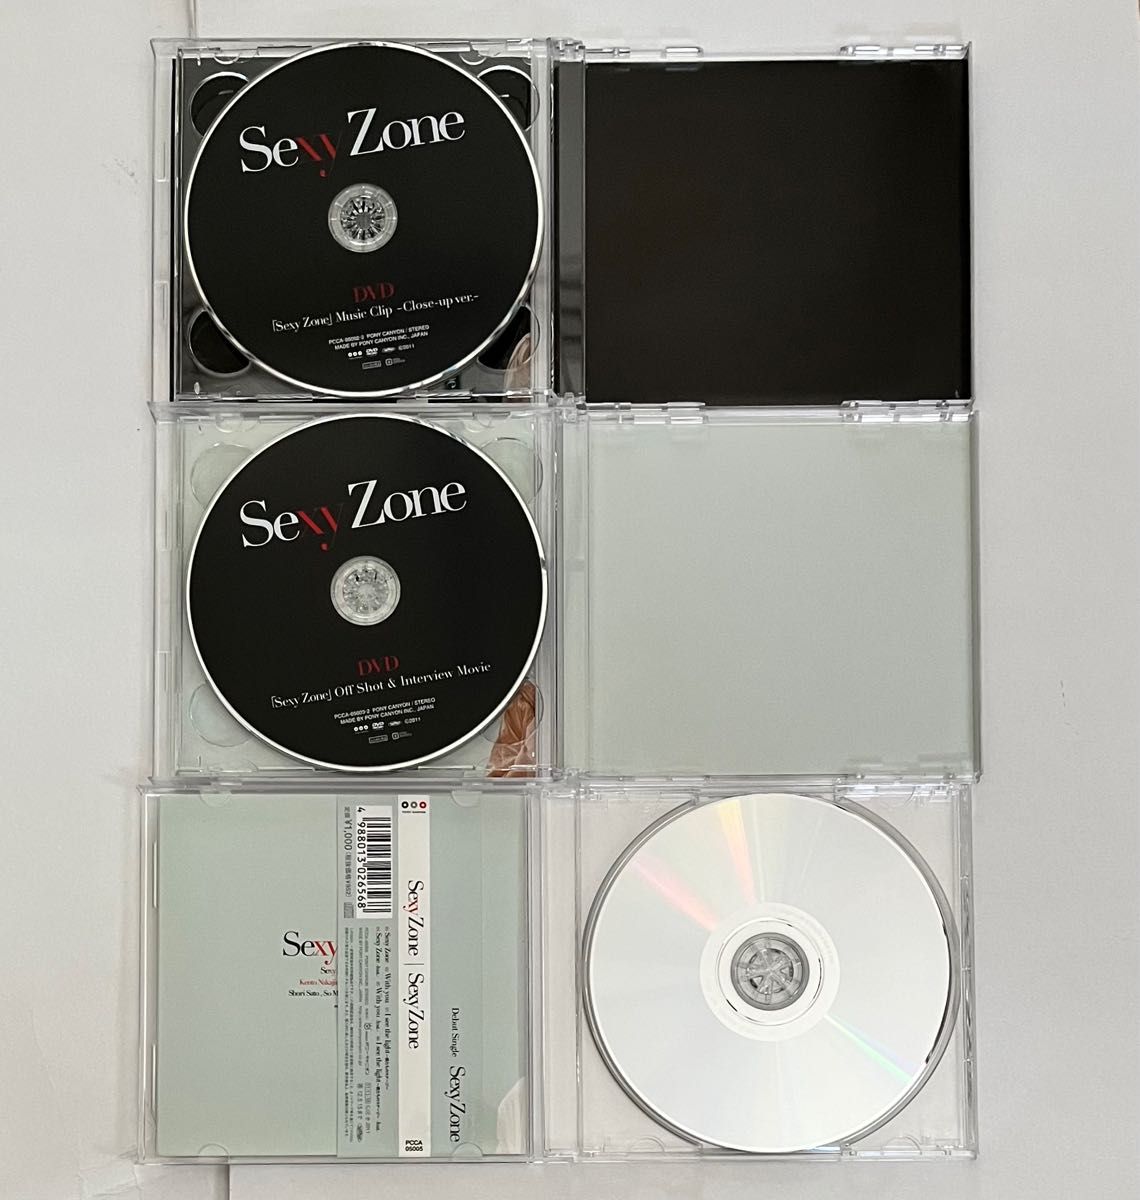 SexyZone セクゾ デビューシングル 3形態セット D